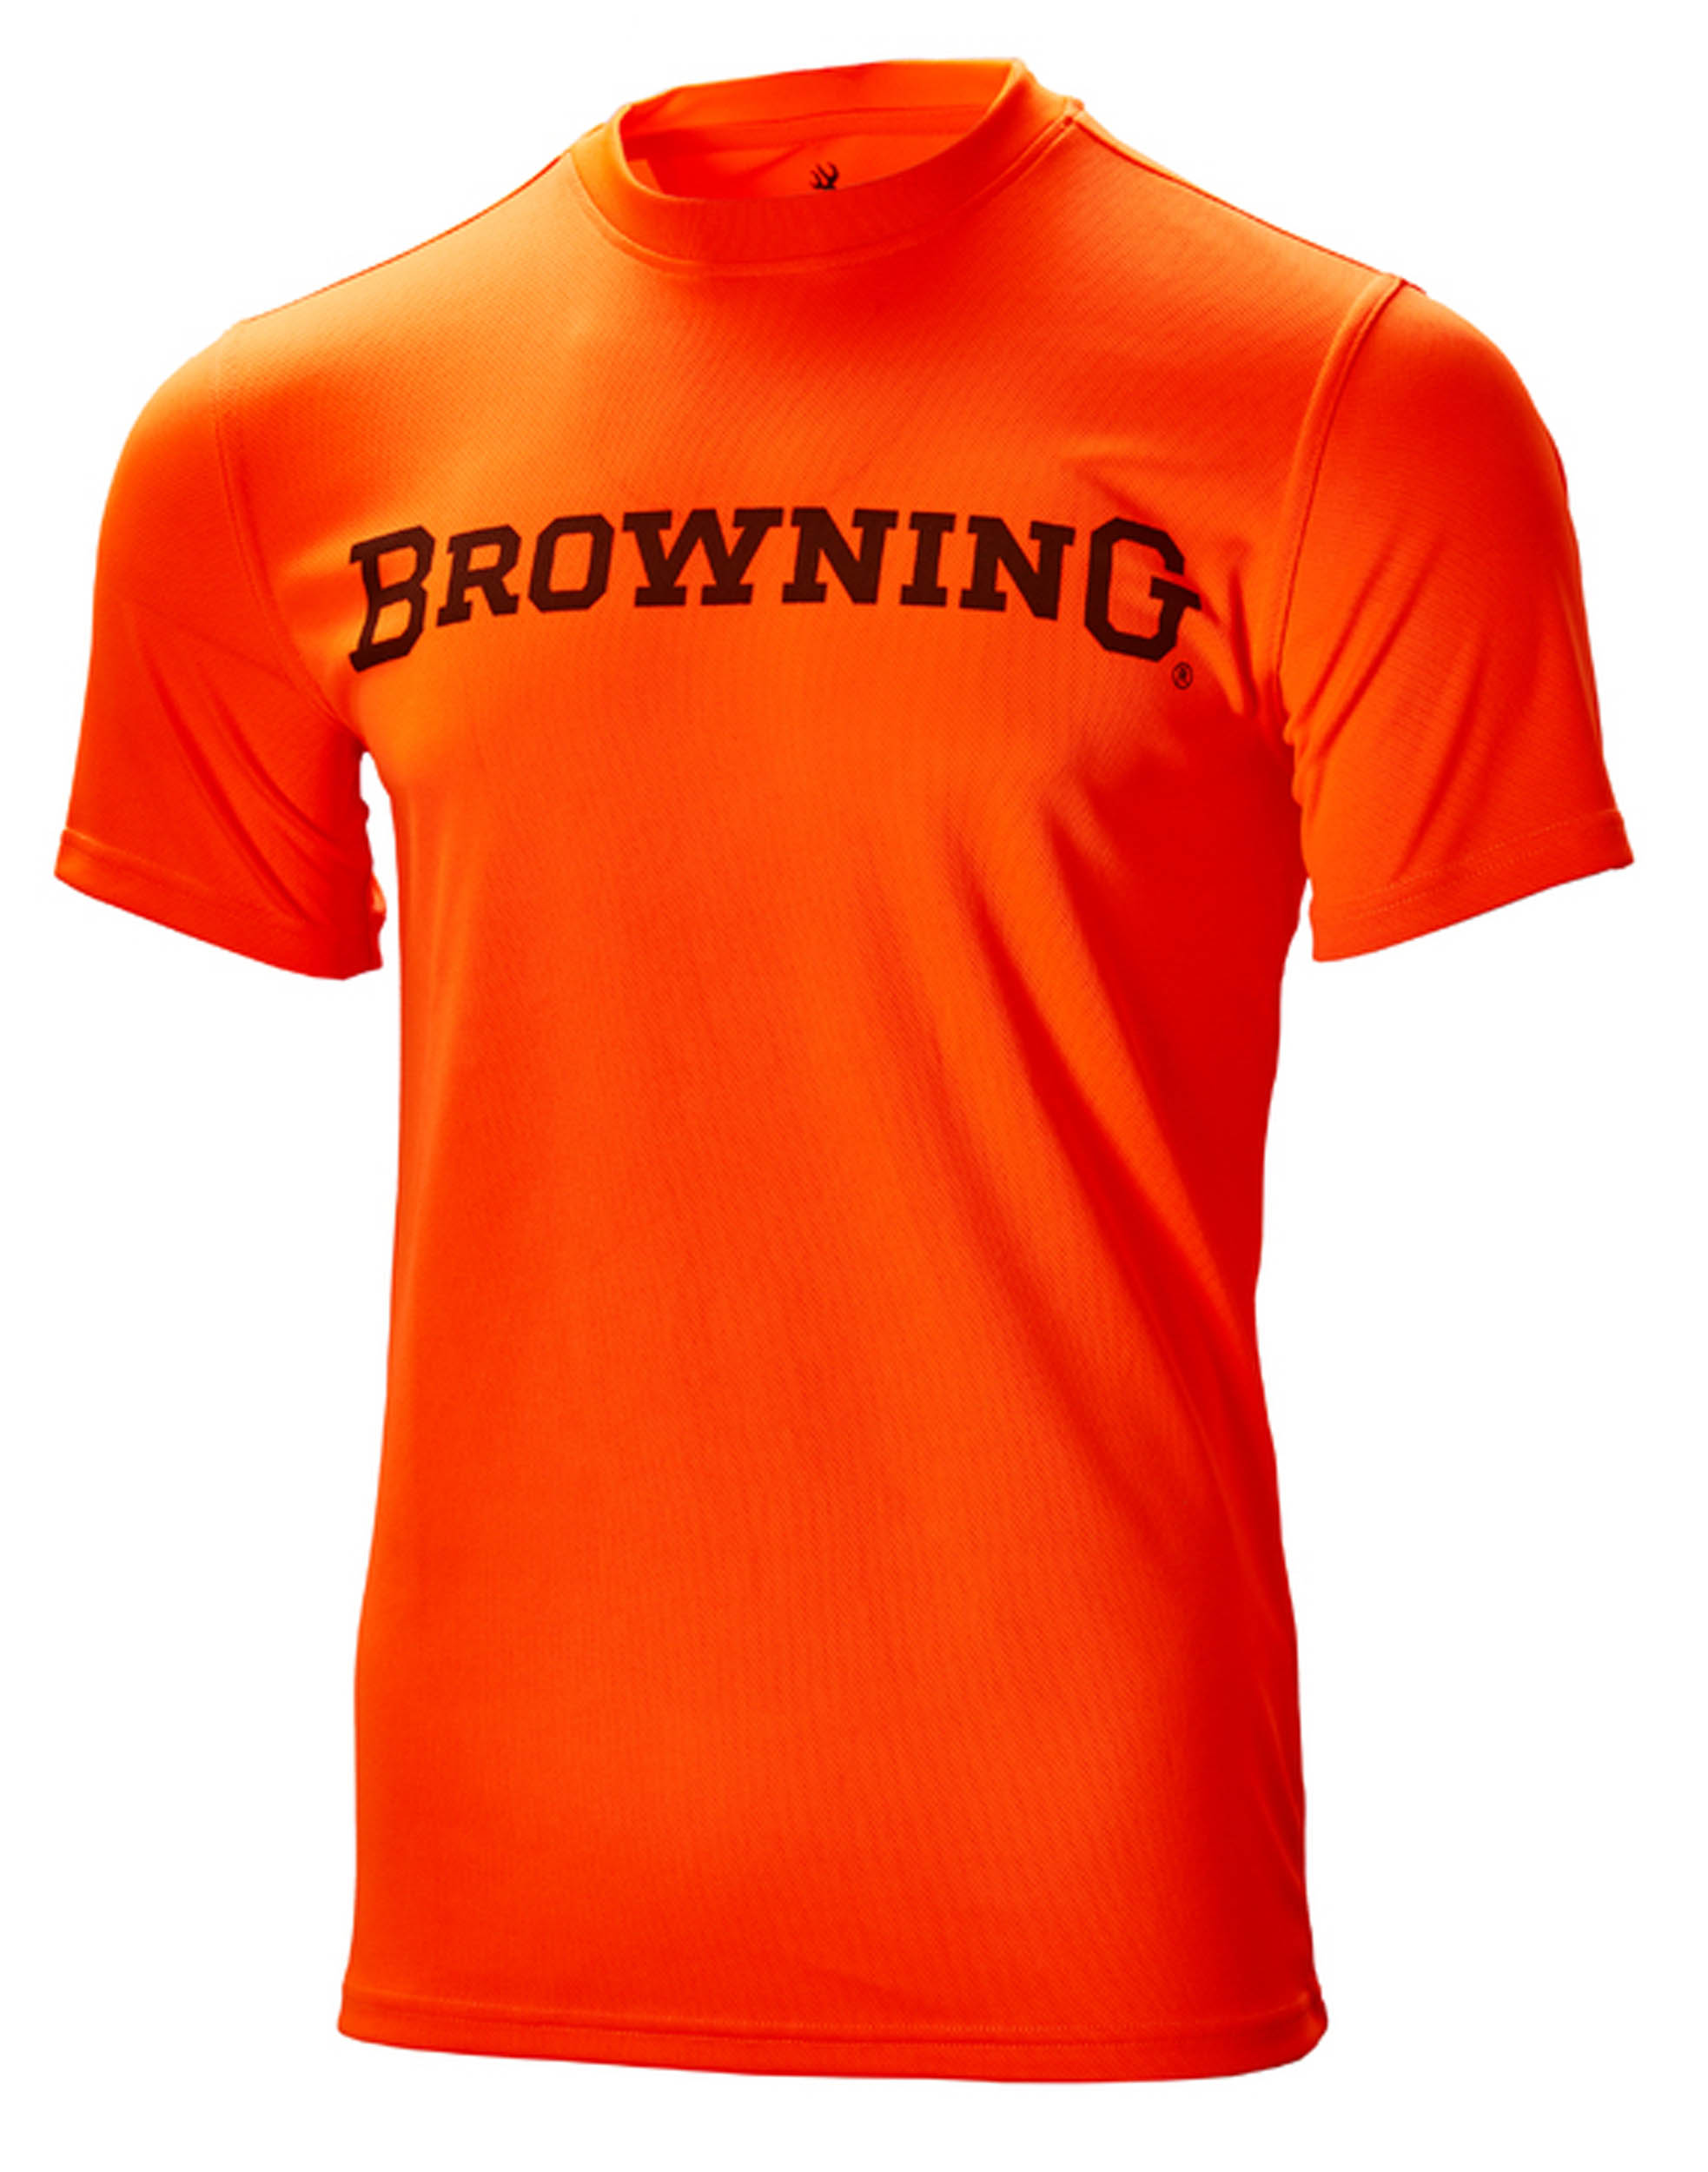 Vêtements et accessoires Browning pour la chasse